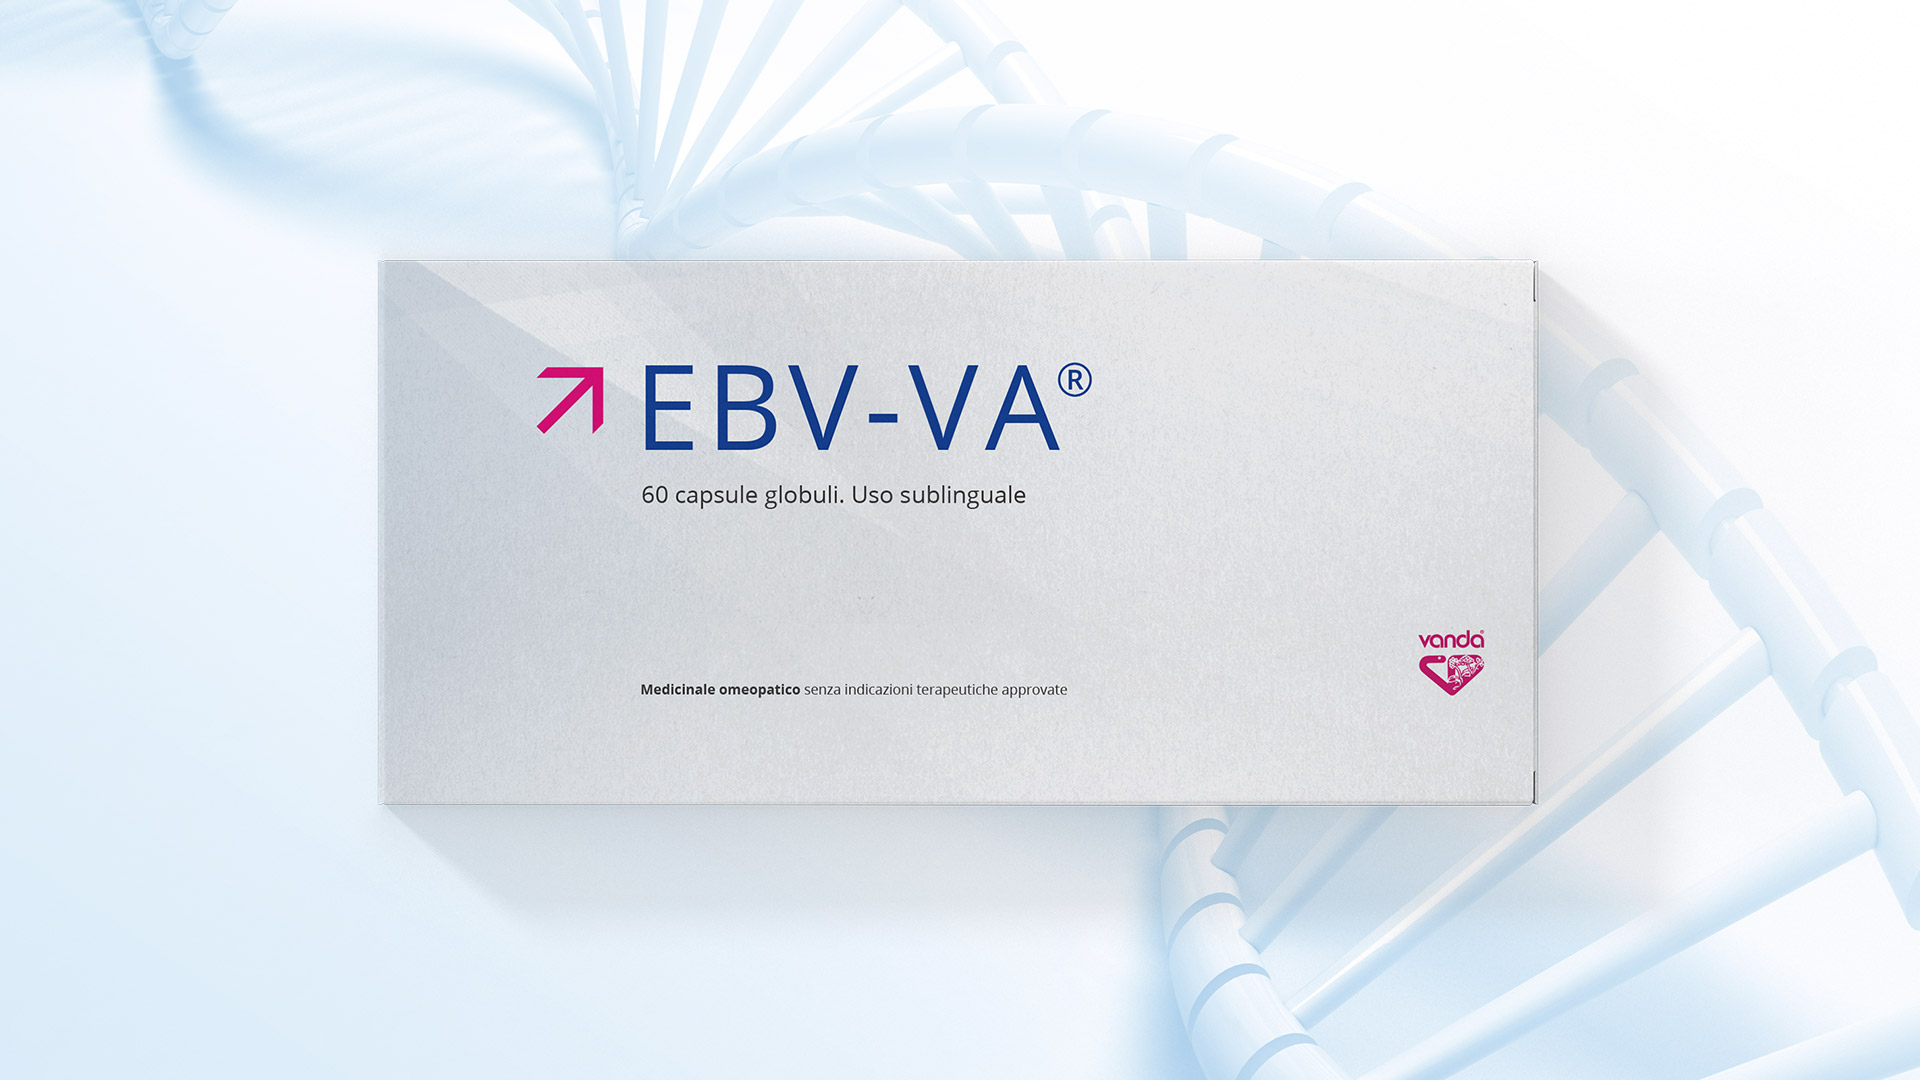 Image of EBV-VA(R) Vanda Microimmunoterapia 60 Capsule Globuli